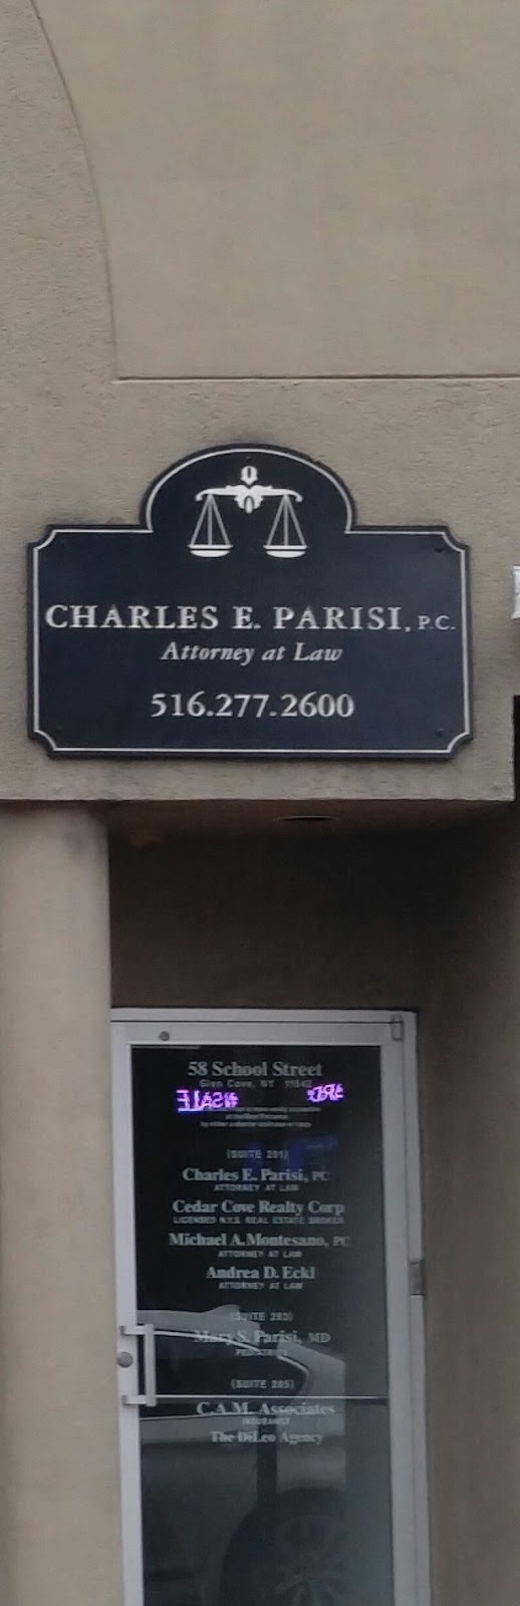 Charles E. Parisi, PC in Glen Cove City, New York, United States - #1 Photo of Point of interest, Establishment